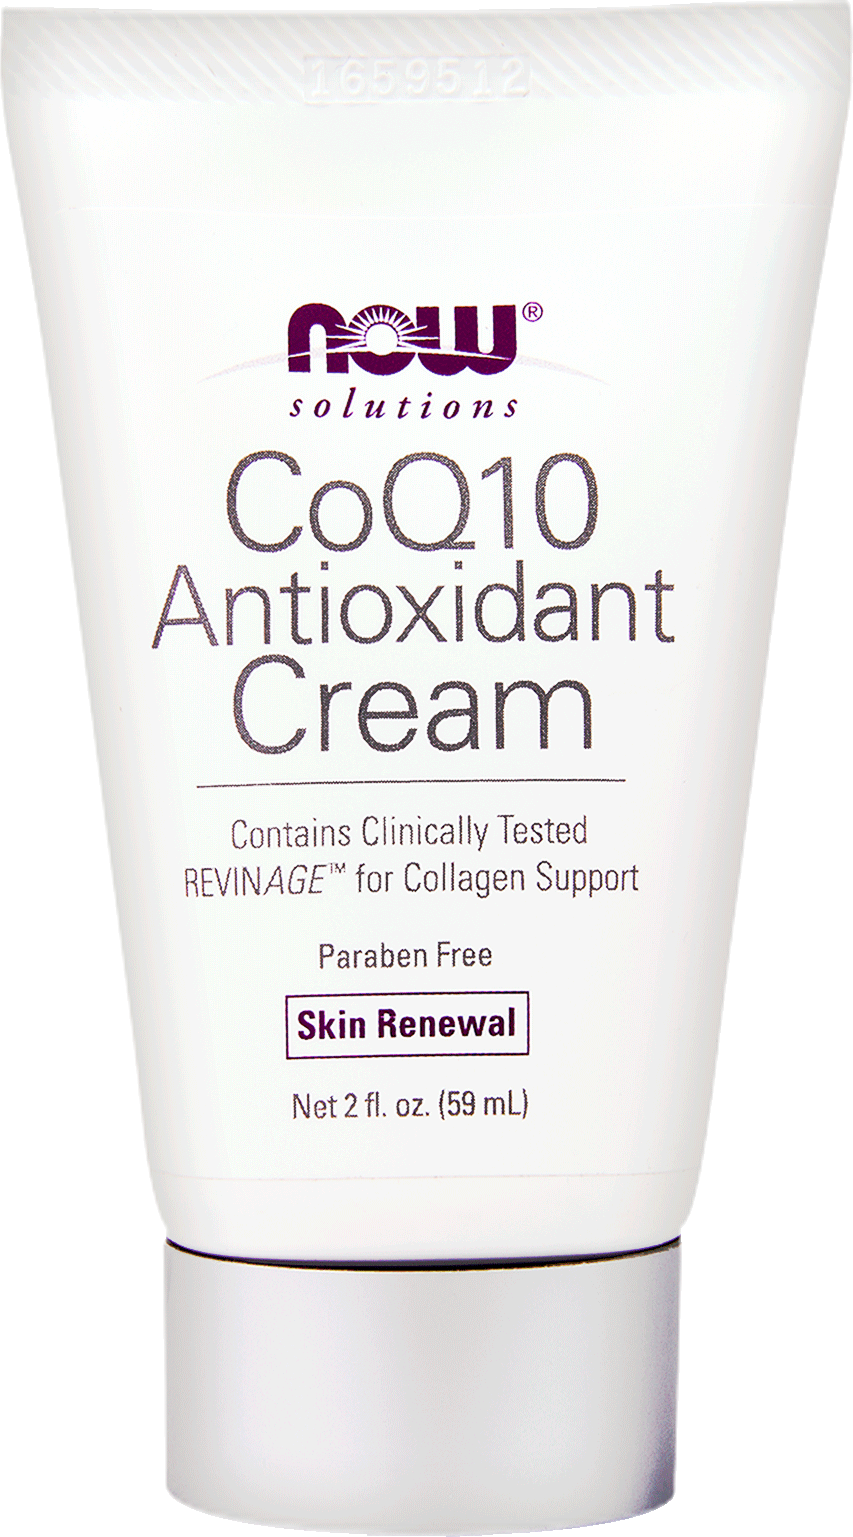 CoQ10 Antioxidant Cream - BadiZdrav.BG